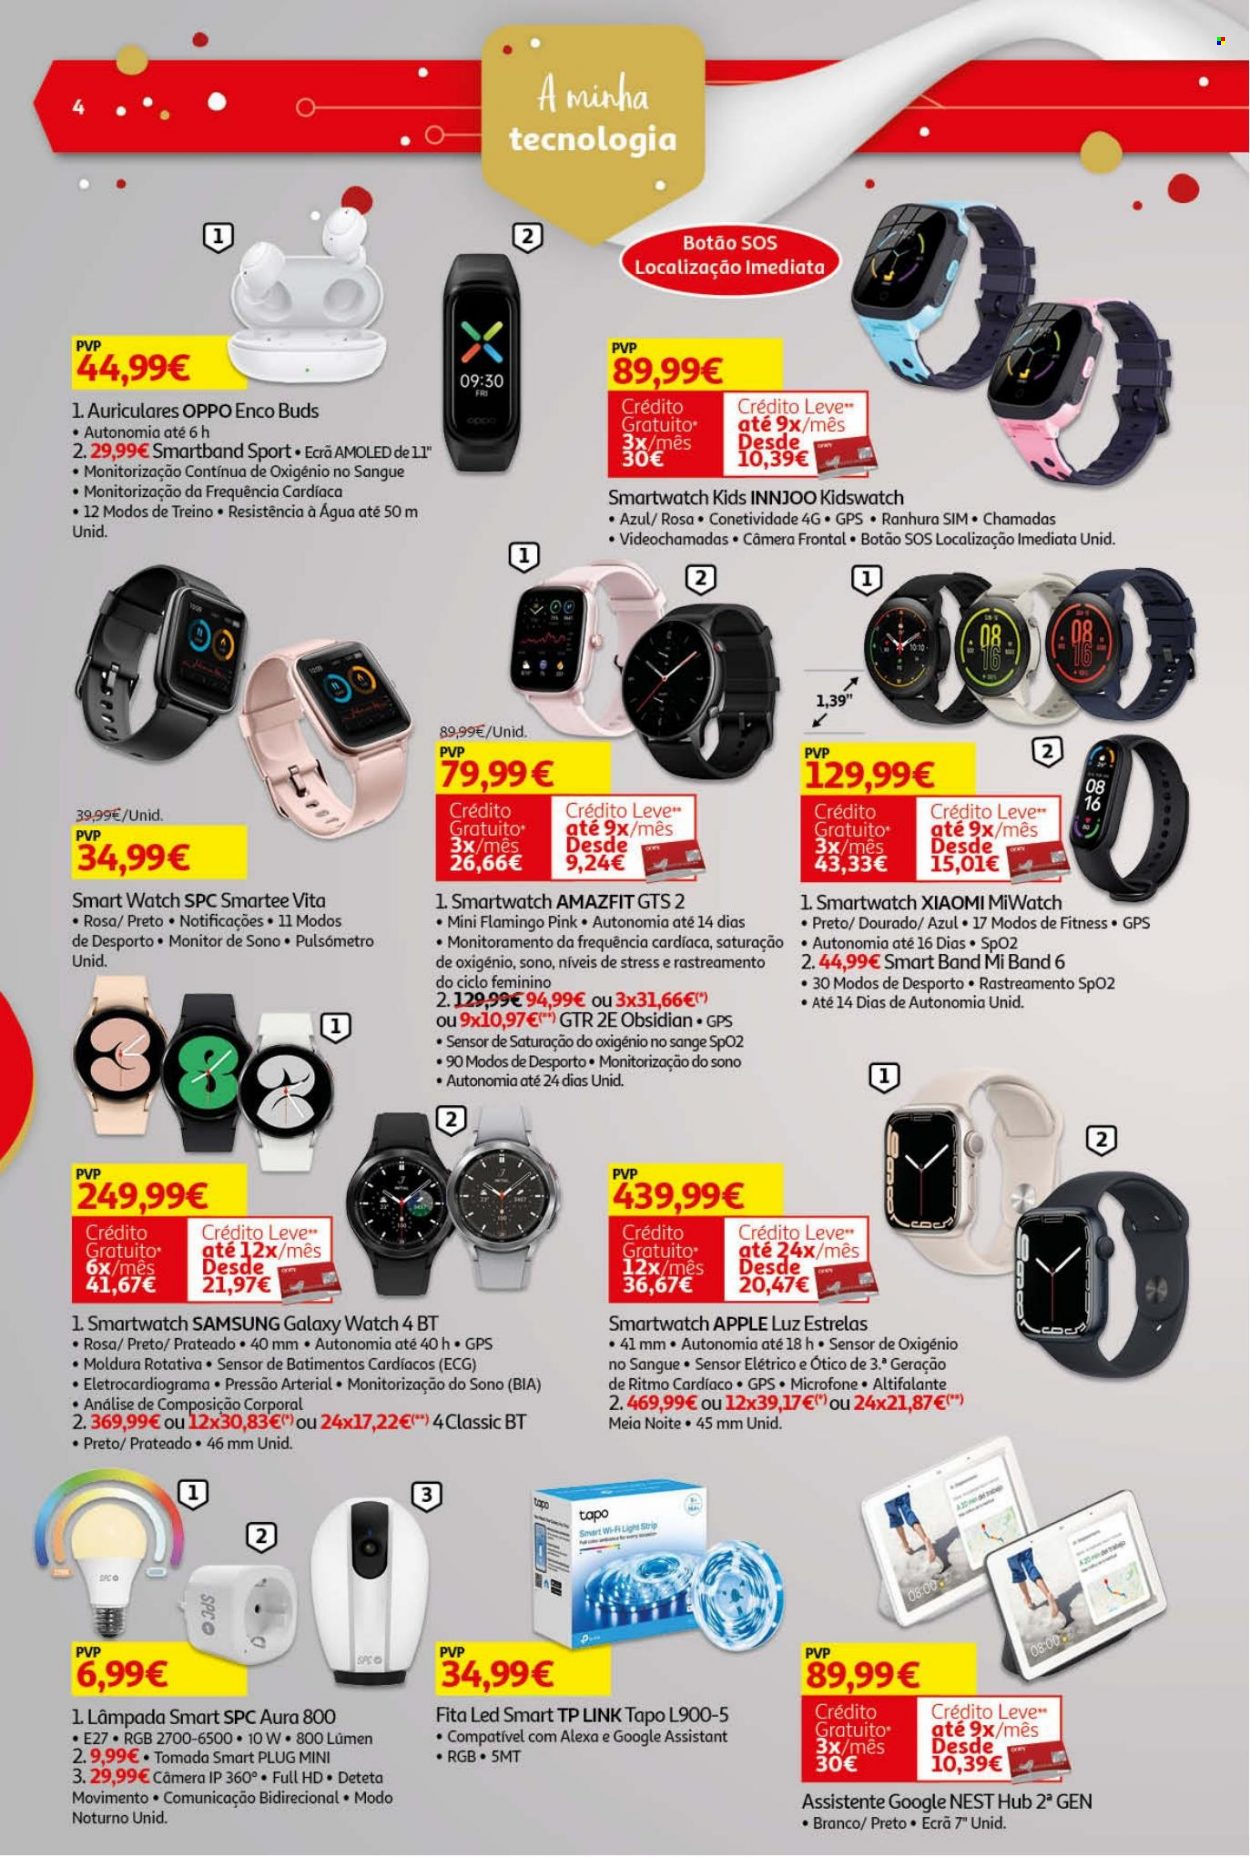 thumbnail - Folheto Auchan - 26.11.2021 - 24.12.2021 - Produtos em promoção - Samsung, lâmpada, Apple, auriculares, smartwatch, microfone, moldura, meias, fita de luz. Página 4.